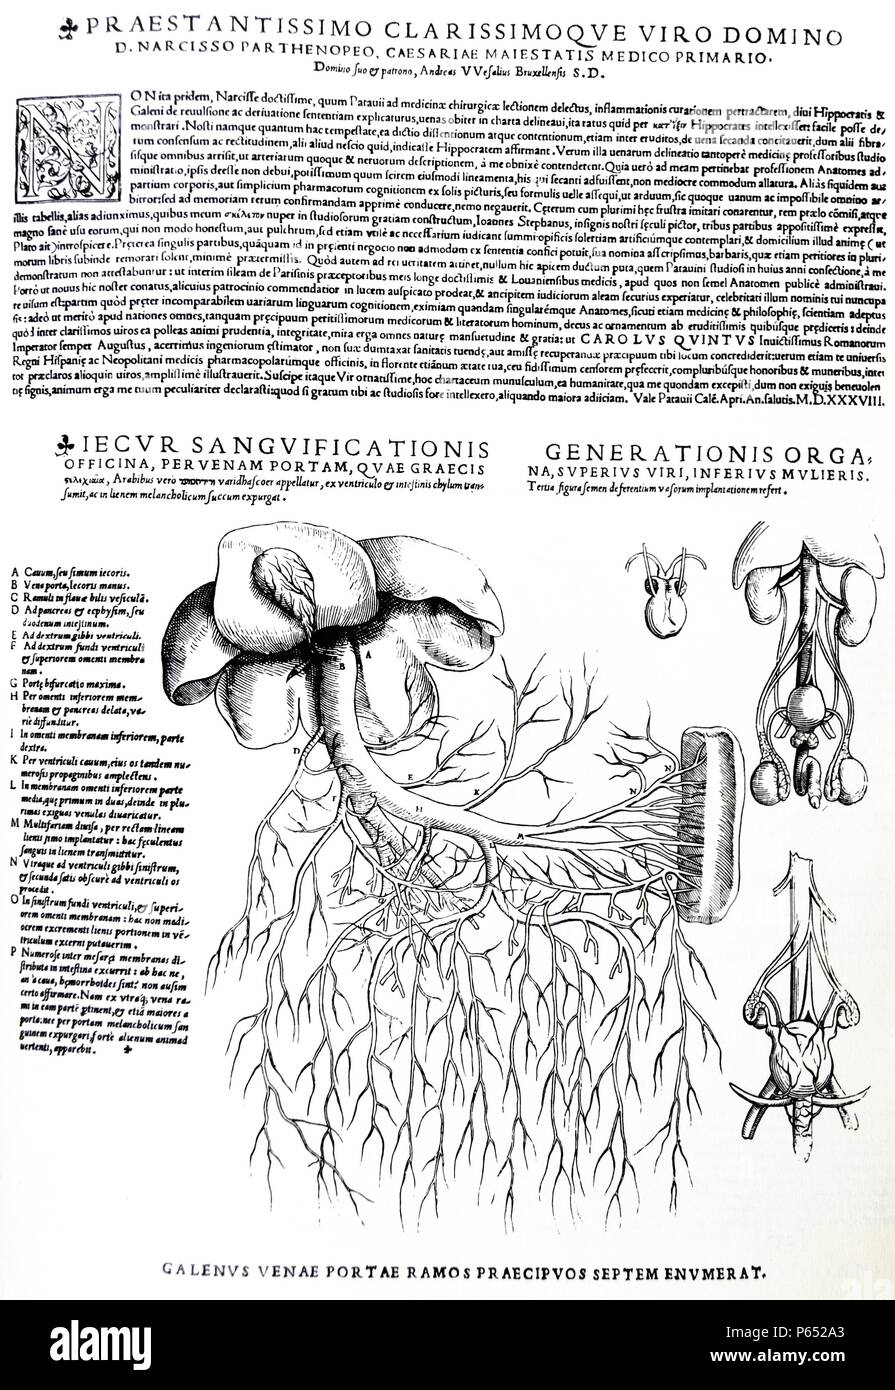 Le piastre da la personificazione del De humani corporis fabrica di Andreas Vesalius, (1514-1564) piastra 89 - diagramma che mostra il maschio e la femmina di sistemi di riproduzione (destra);diagramma che mostra il fegato con sistema venoso (sinistra). Foto Stock